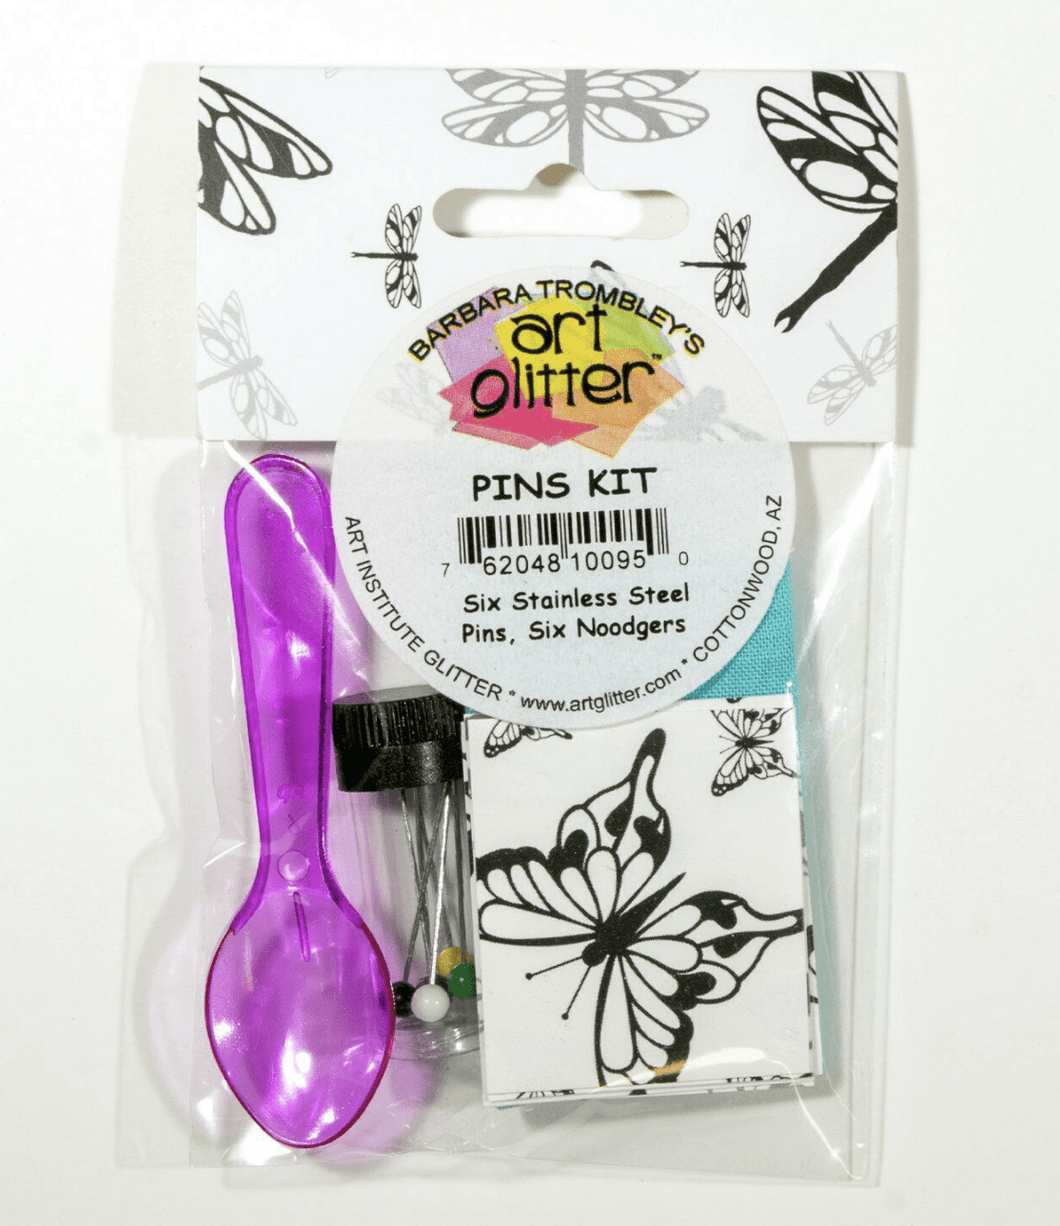 Pins Kit - Art Glitter